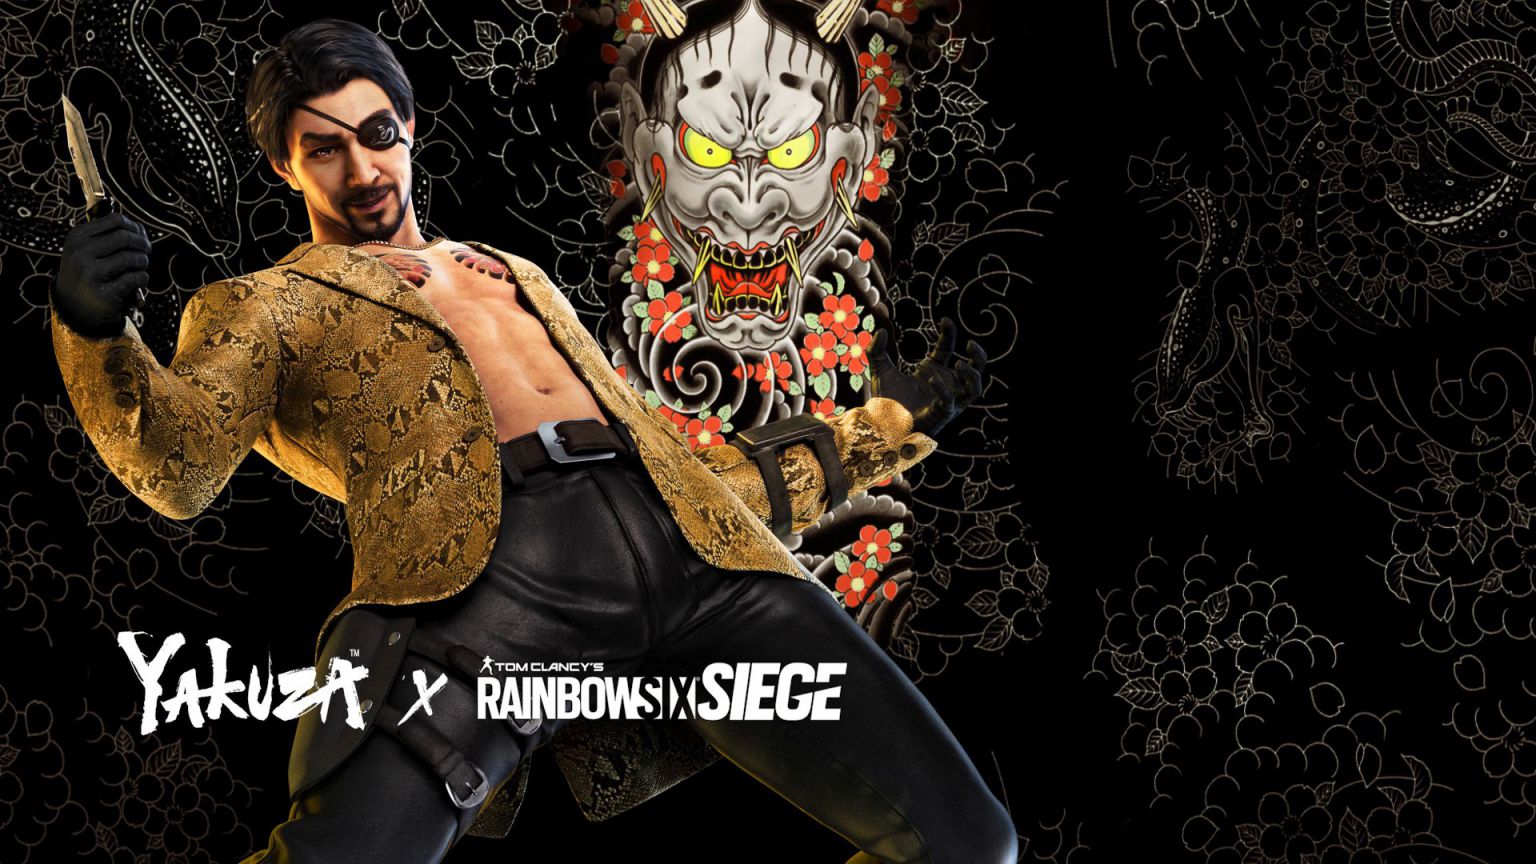 rainbow six siege - yakuza - generacion xbox